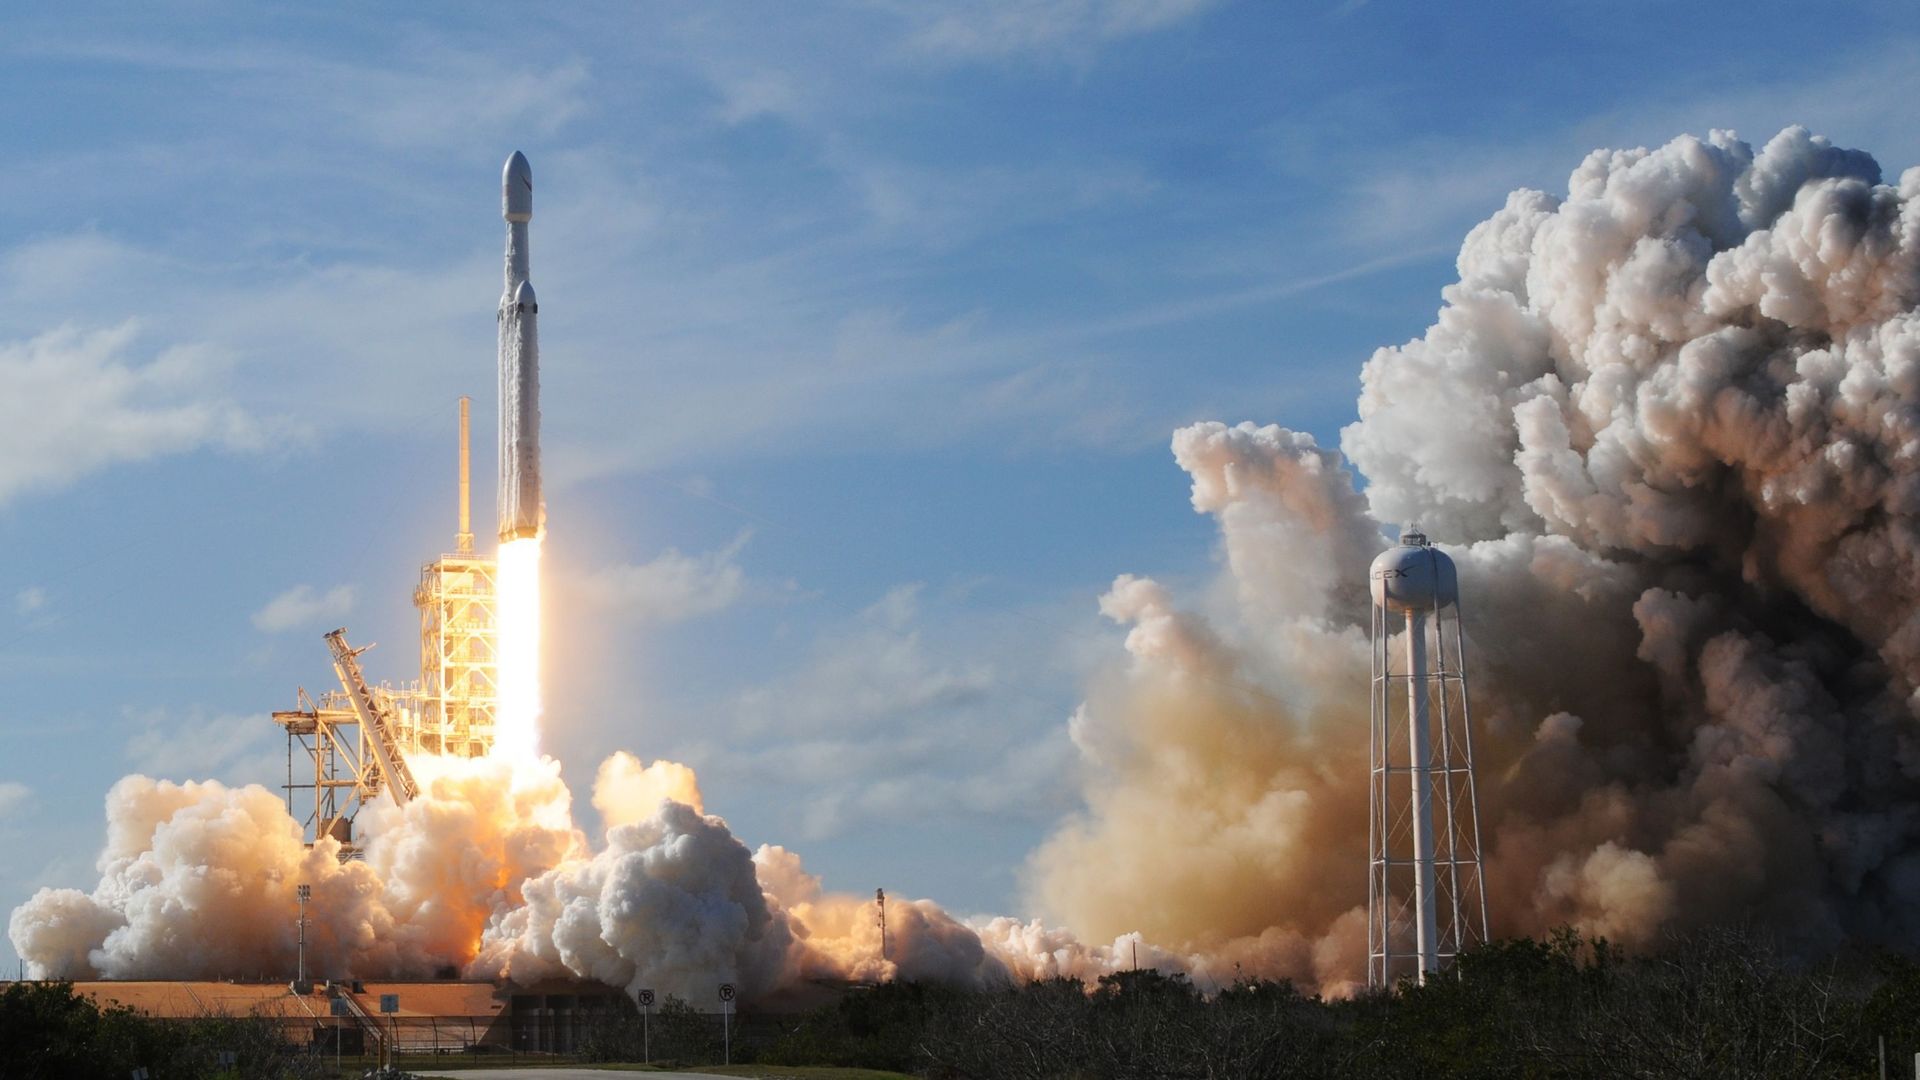 Début 2017, SpaceX avait annoncé que deux passagers seraient envoyés vers la Lune dès 2018 à bord de sa fusée Falcon Heavy, un voyage qui n'a finalement jamais eu lieu.